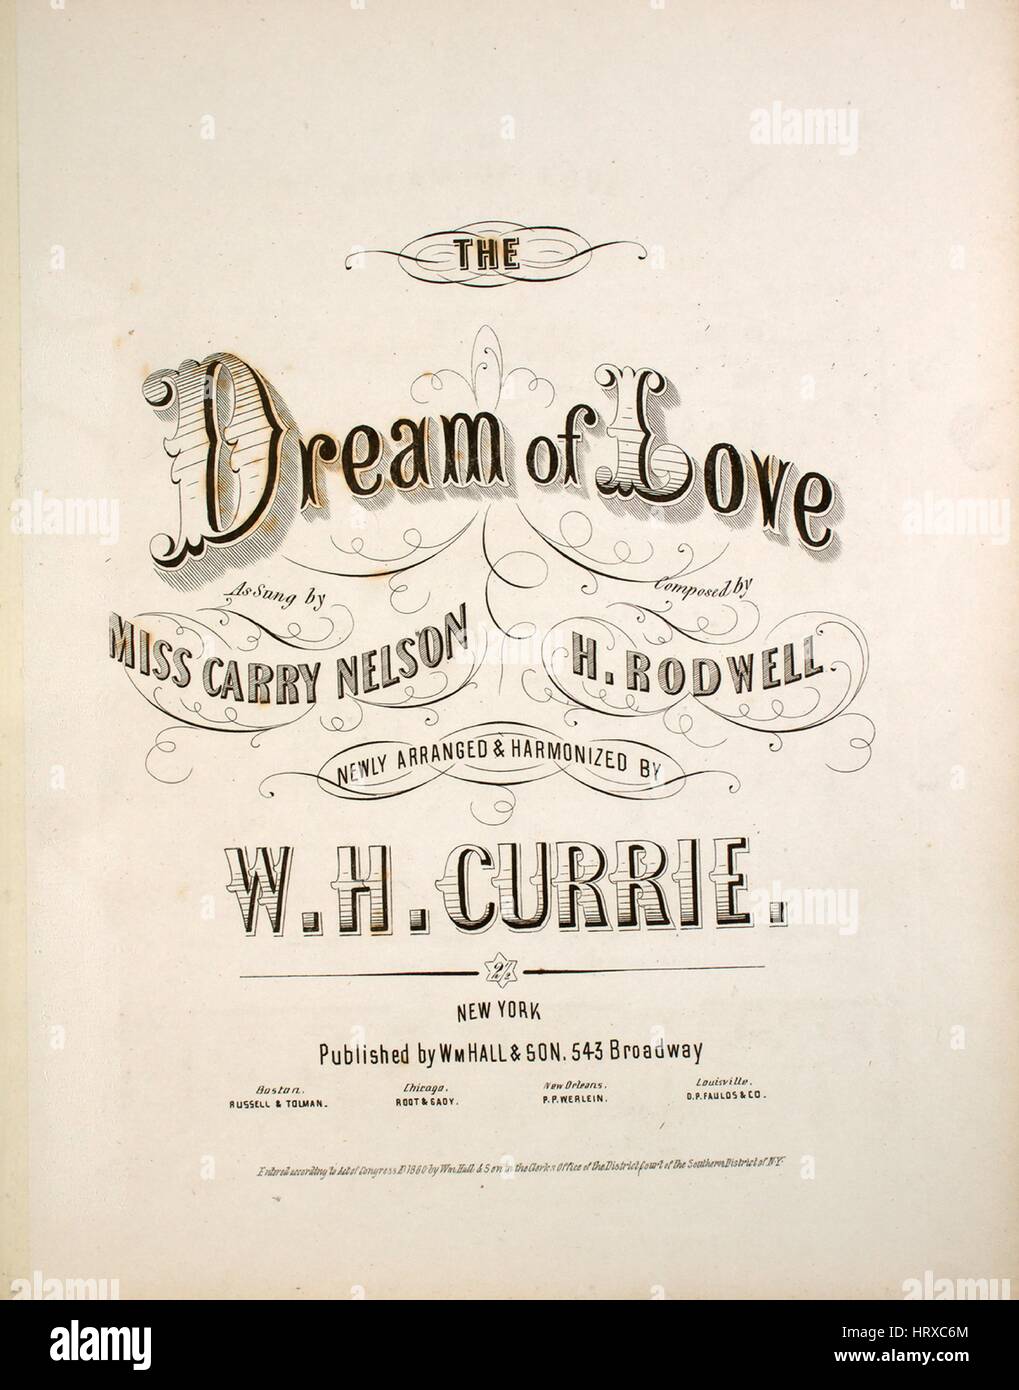 Imagen de cubierta de partituras de la canción "Sueño de amor", con notas  de autoría original leyendo 'compuesto por H Rodwell recién arreglada y  armonizados por WH Currie', Estados Unidos, 1860. El